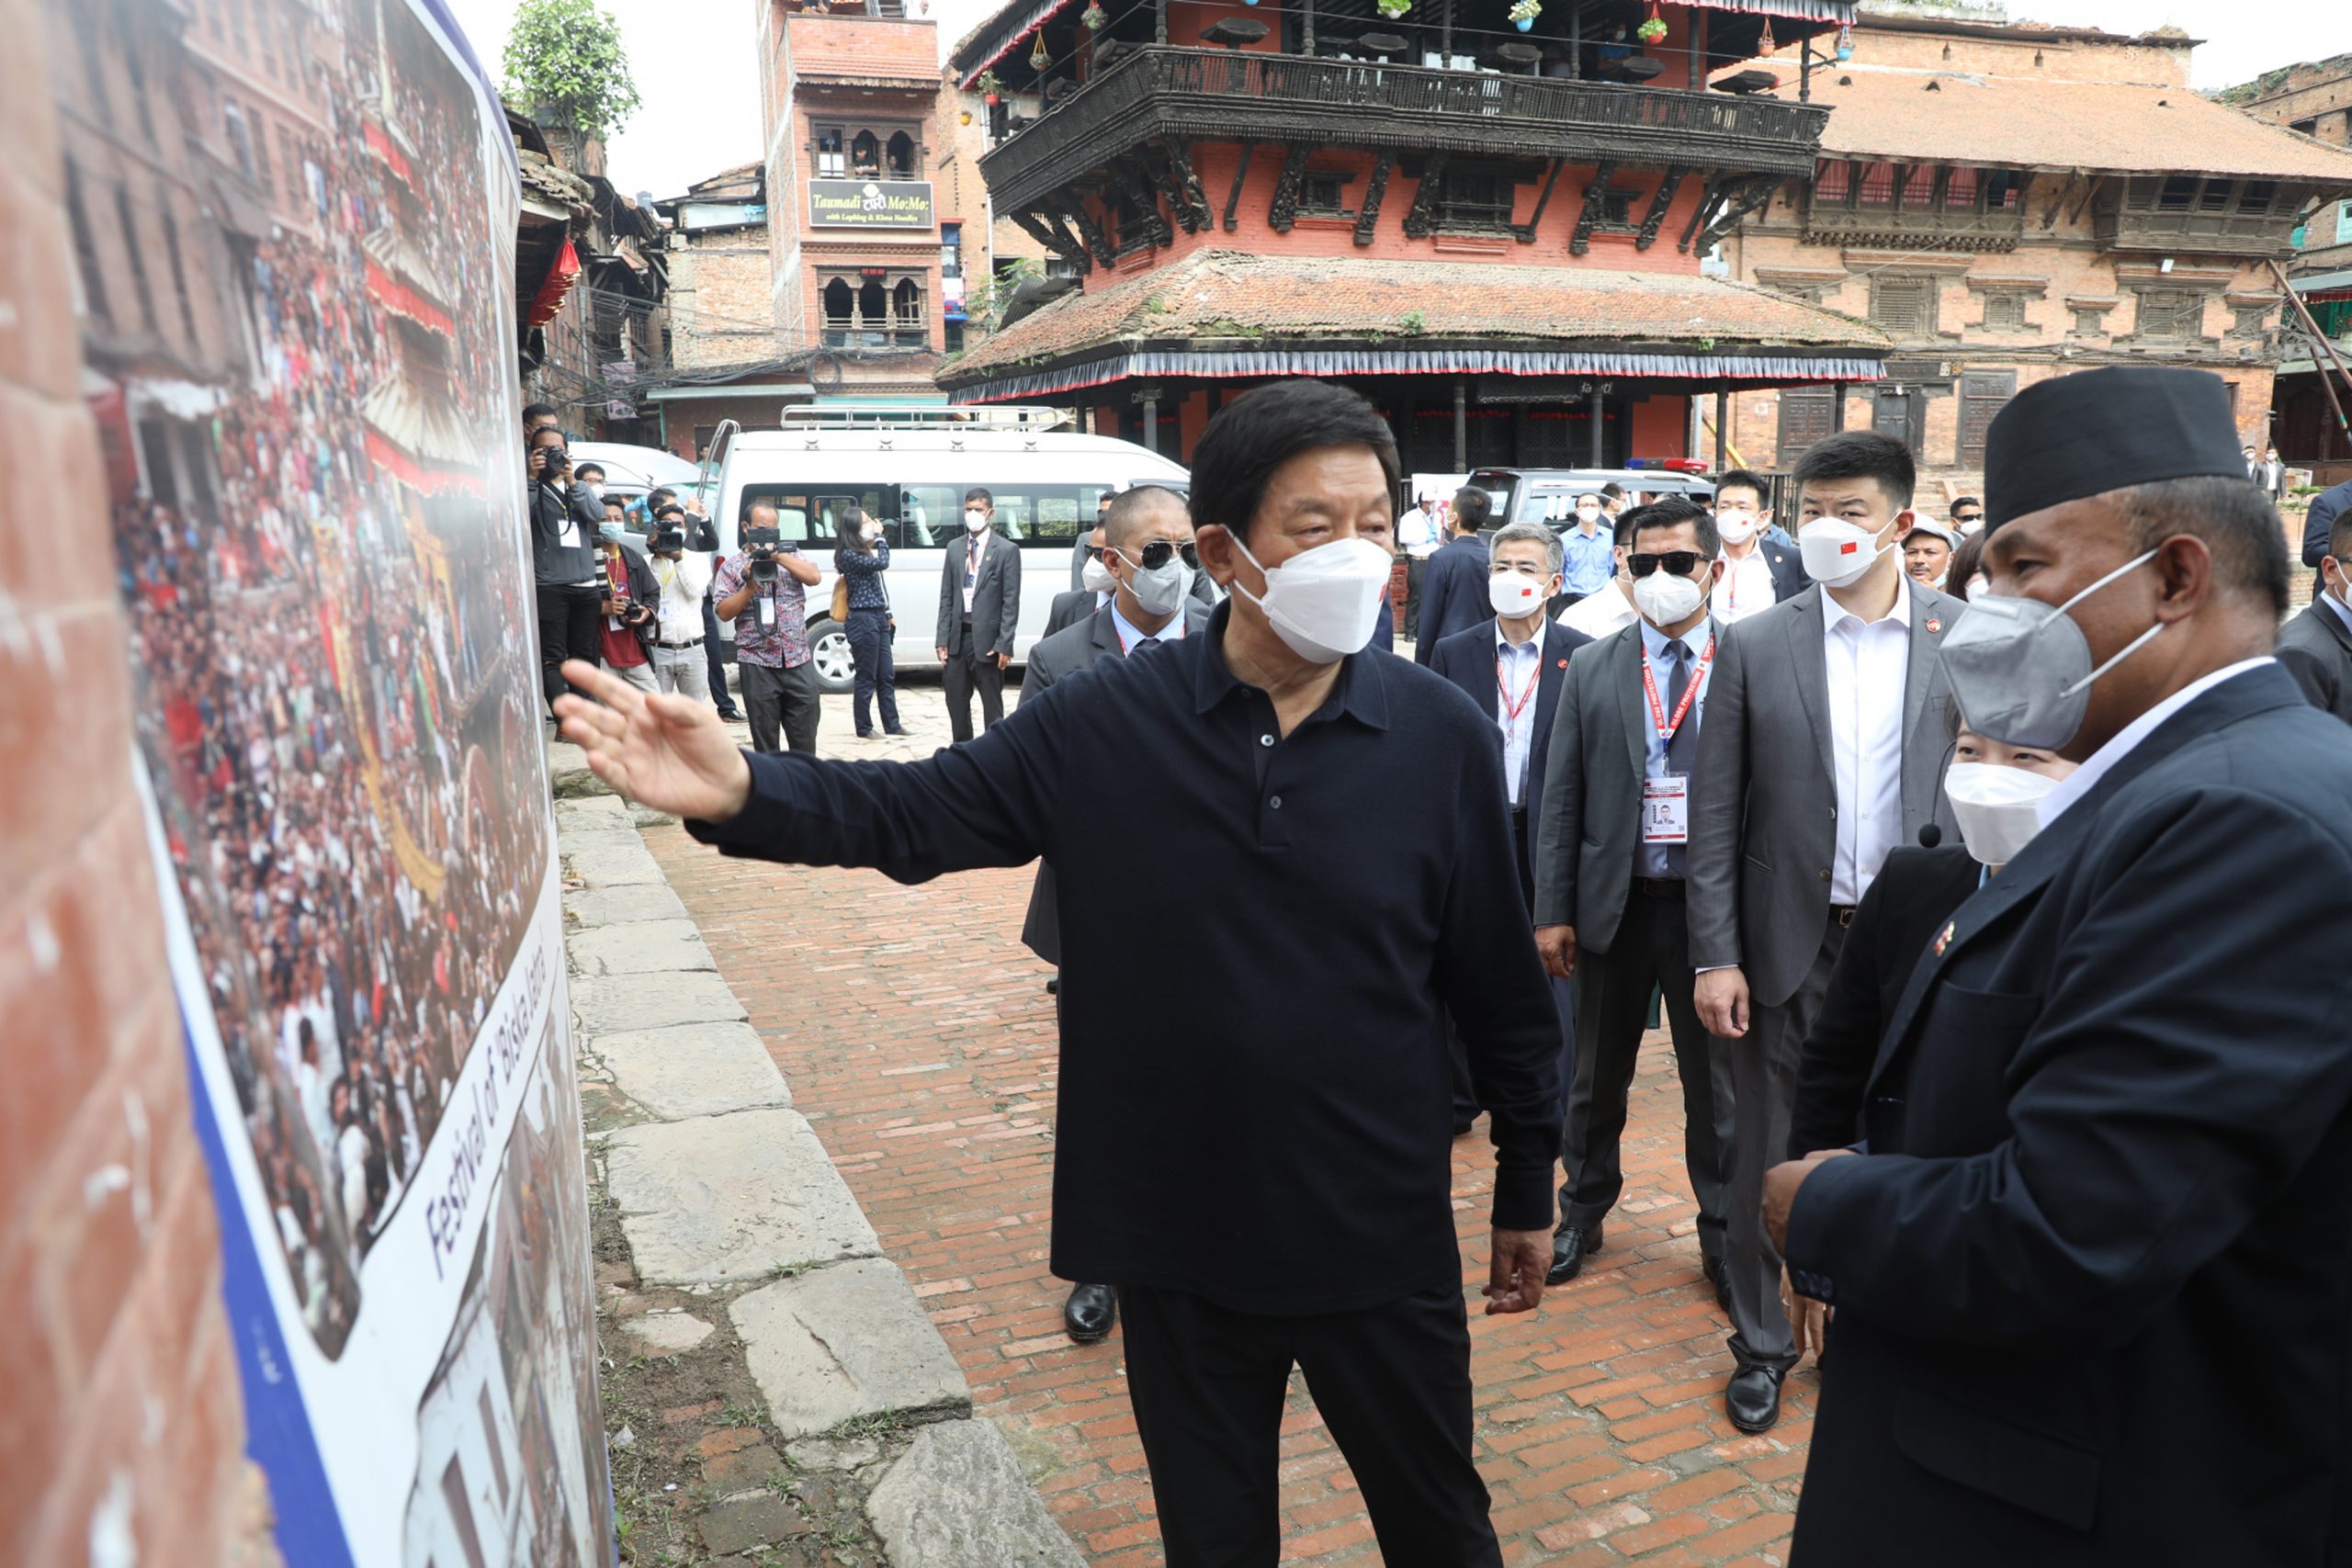 चिनियाँ नेता लीले भन्नुभयो, ‘नेपाली कलासंस्कृति चिनियाँ कलासंस्कृतिसँग मिल्दोजुल्दो’